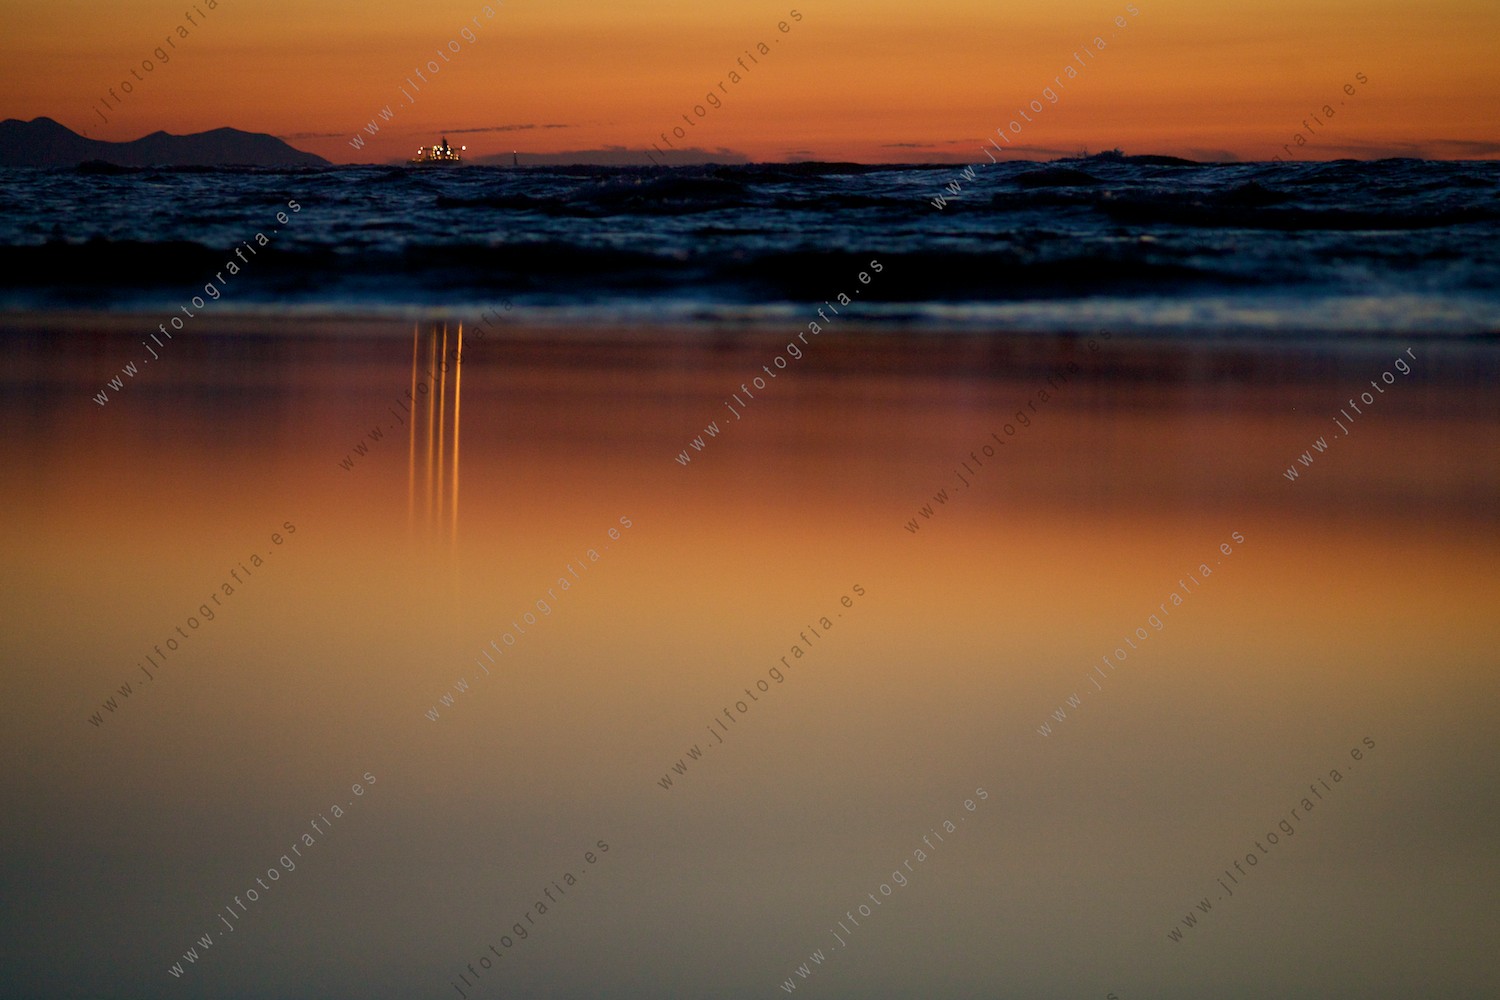 Un barco en el mar, refleja sus luces en el espejo que crea la arena empapada en la cálida luz crepuscular.